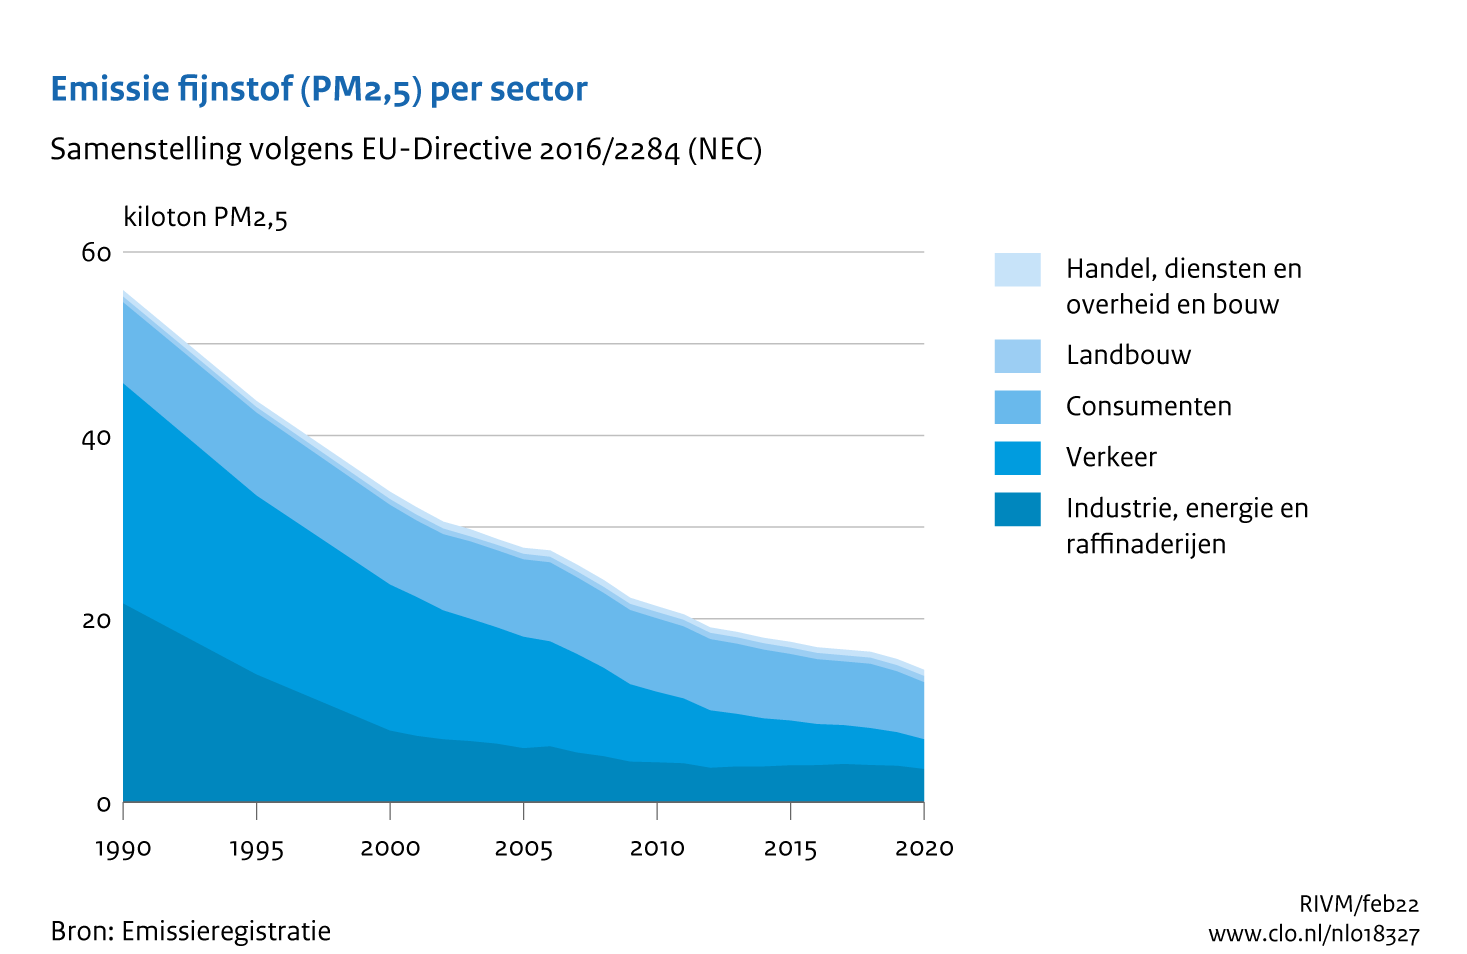 Figuur PM2,5-emissie per sector. In de rest van de tekst wordt deze figuur uitgebreider uitgelegd.